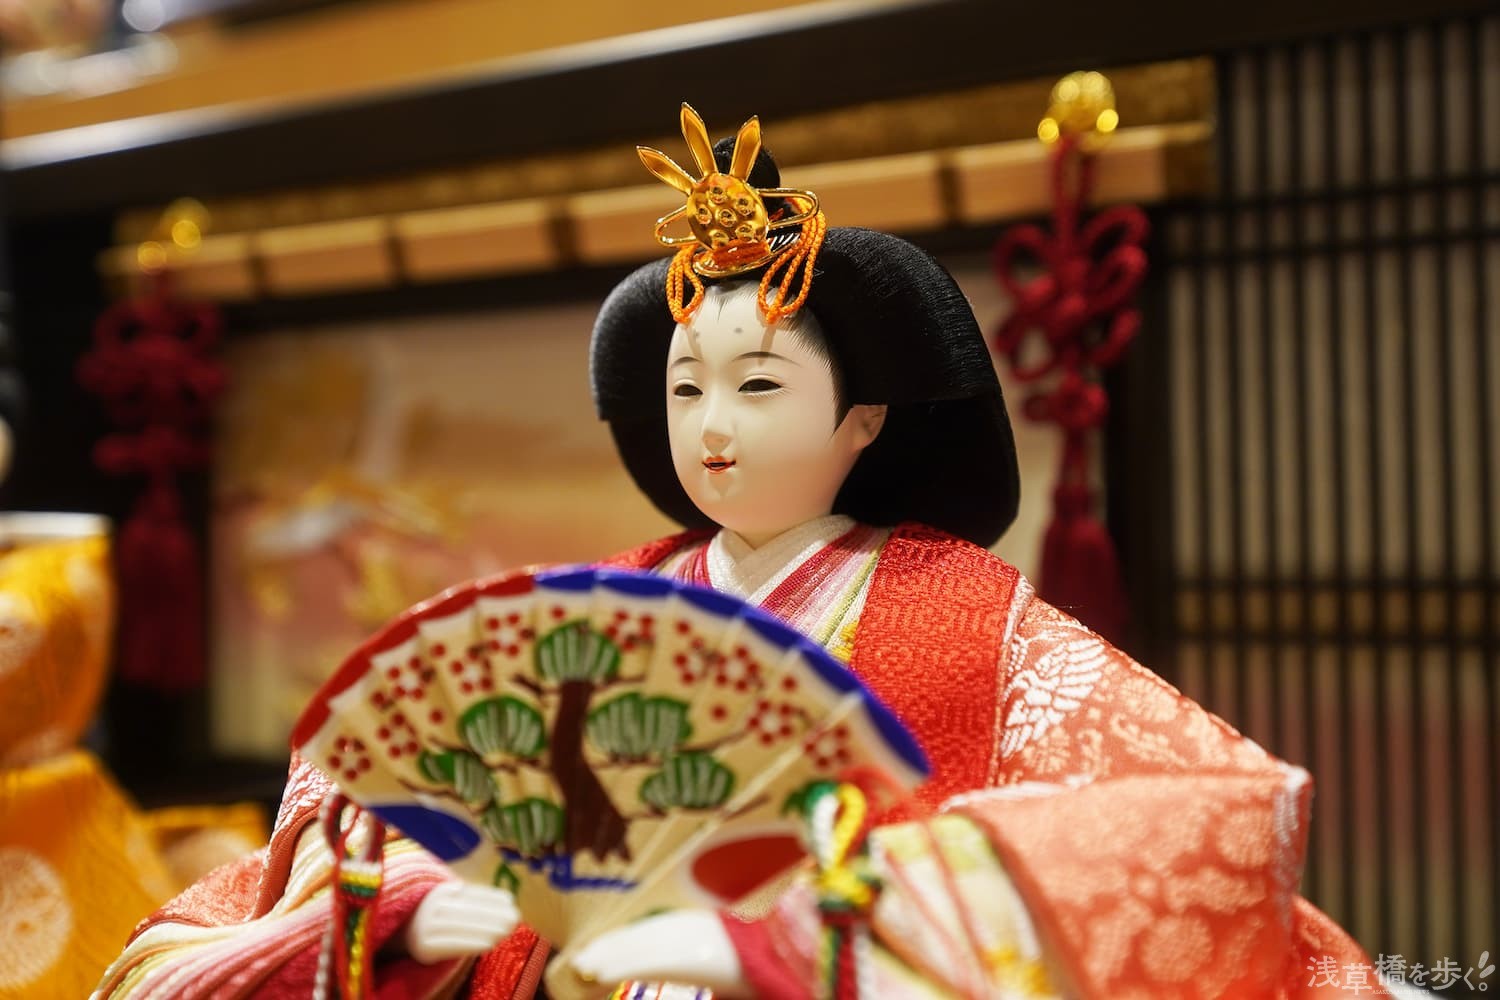 日本の人形史に名を刻む老舗「吉德」十二世・山田德兵衞さん 